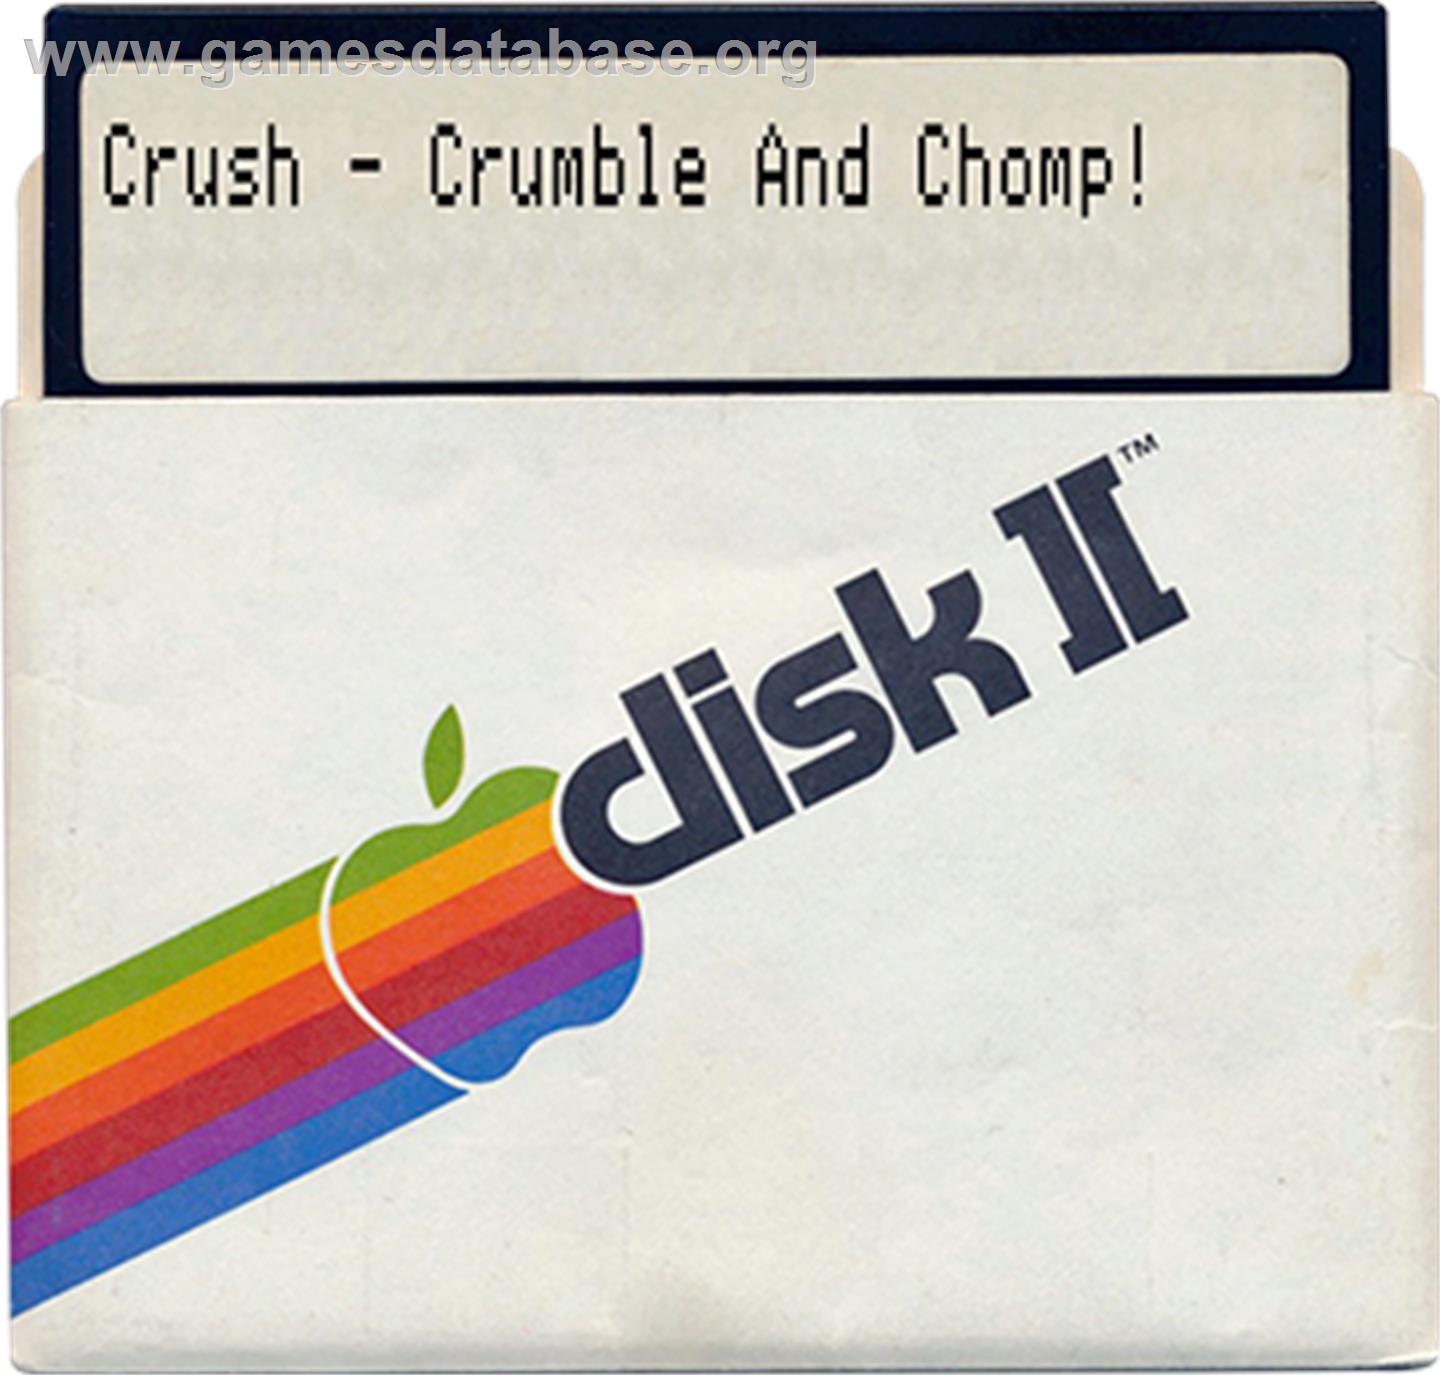 Crush, Crumble and Chomp - Apple II - Artwork - Disc